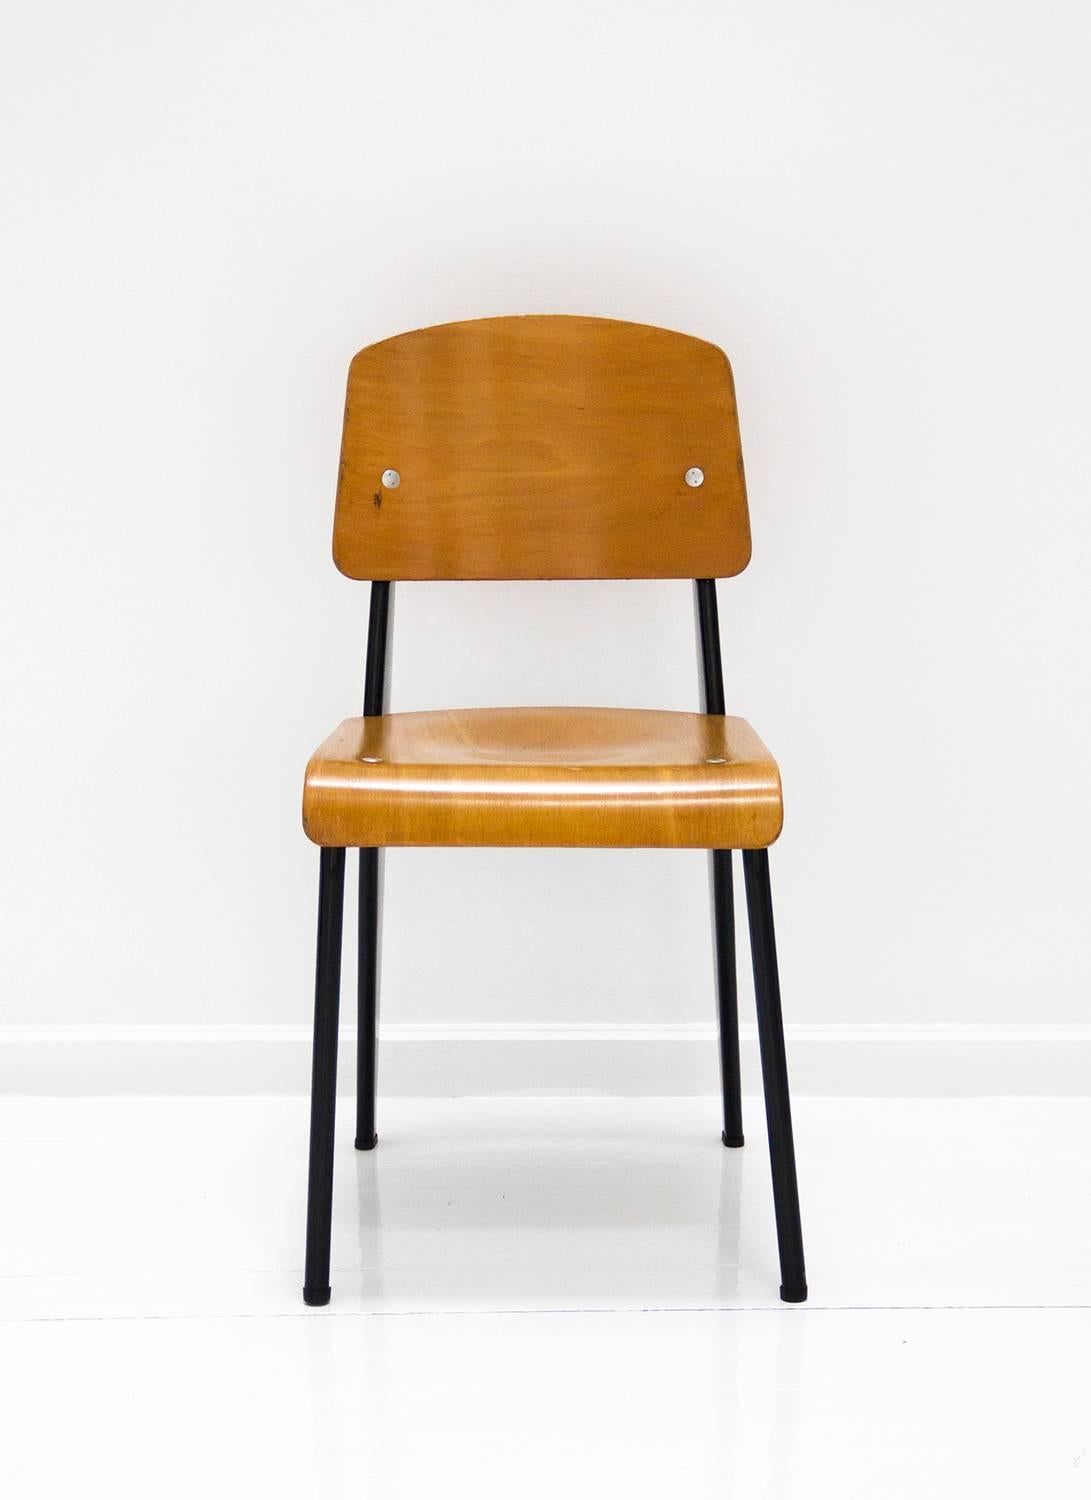 Chaise standard, modèle Métropole n° 305 chaise conçue par Jean Prouvé.
Fabriqué en acier plié et en contreplaqué moulé,
vers 1950, France.
 